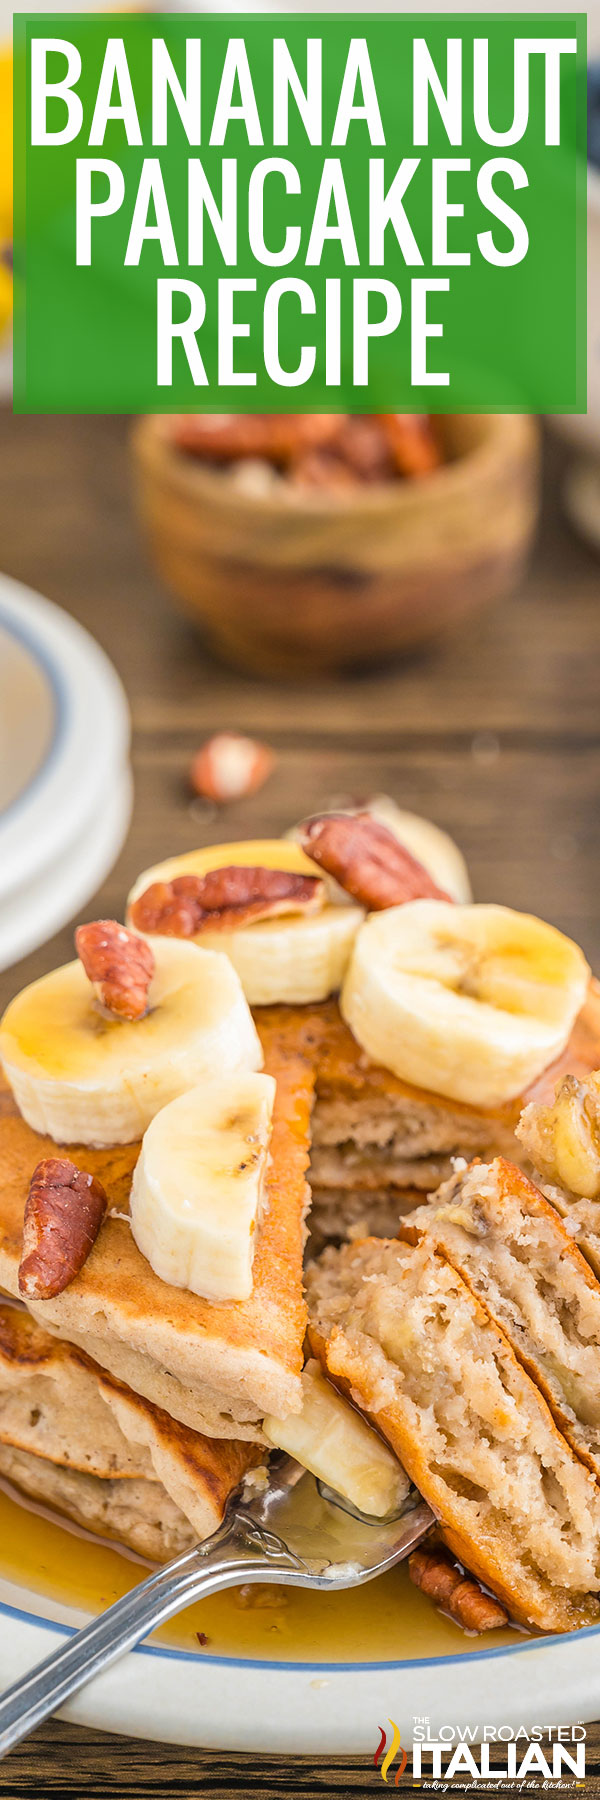 Banana Nut Pancakes - PIN